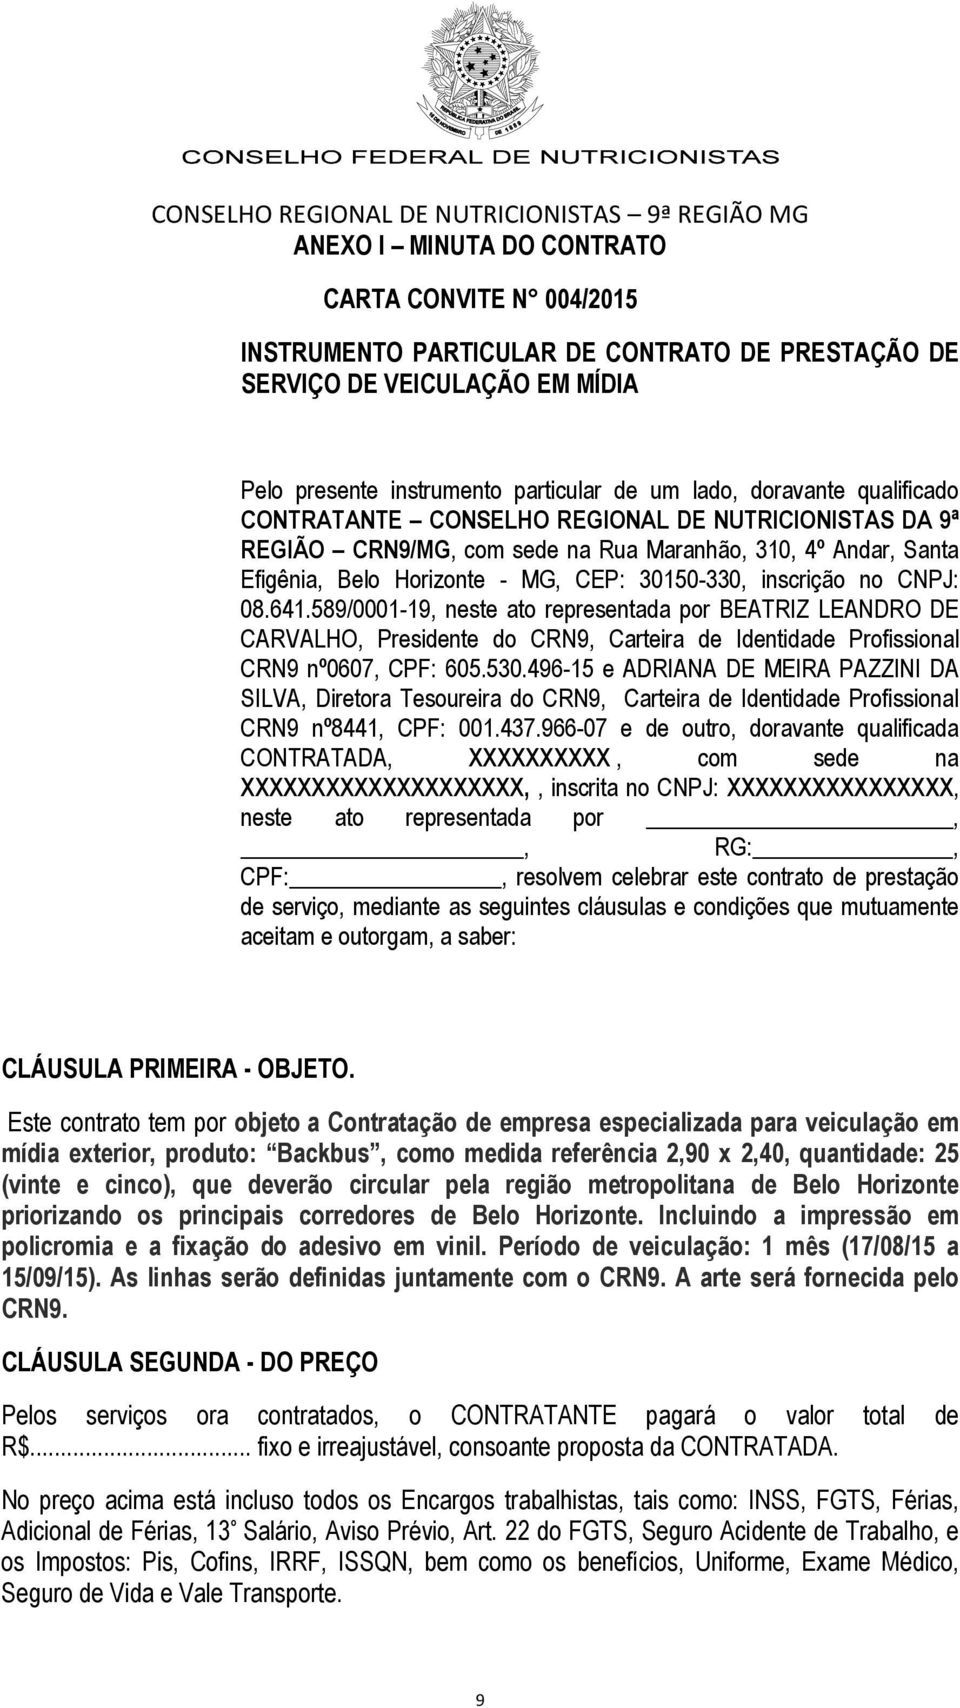 641.589/0001-19, neste ato representada por BEATRIZ LEANDRO DE CARVALHO, Presidente do CRN9, Carteira de Identidade Profissional CRN9 nº0607, CPF: 605.530.